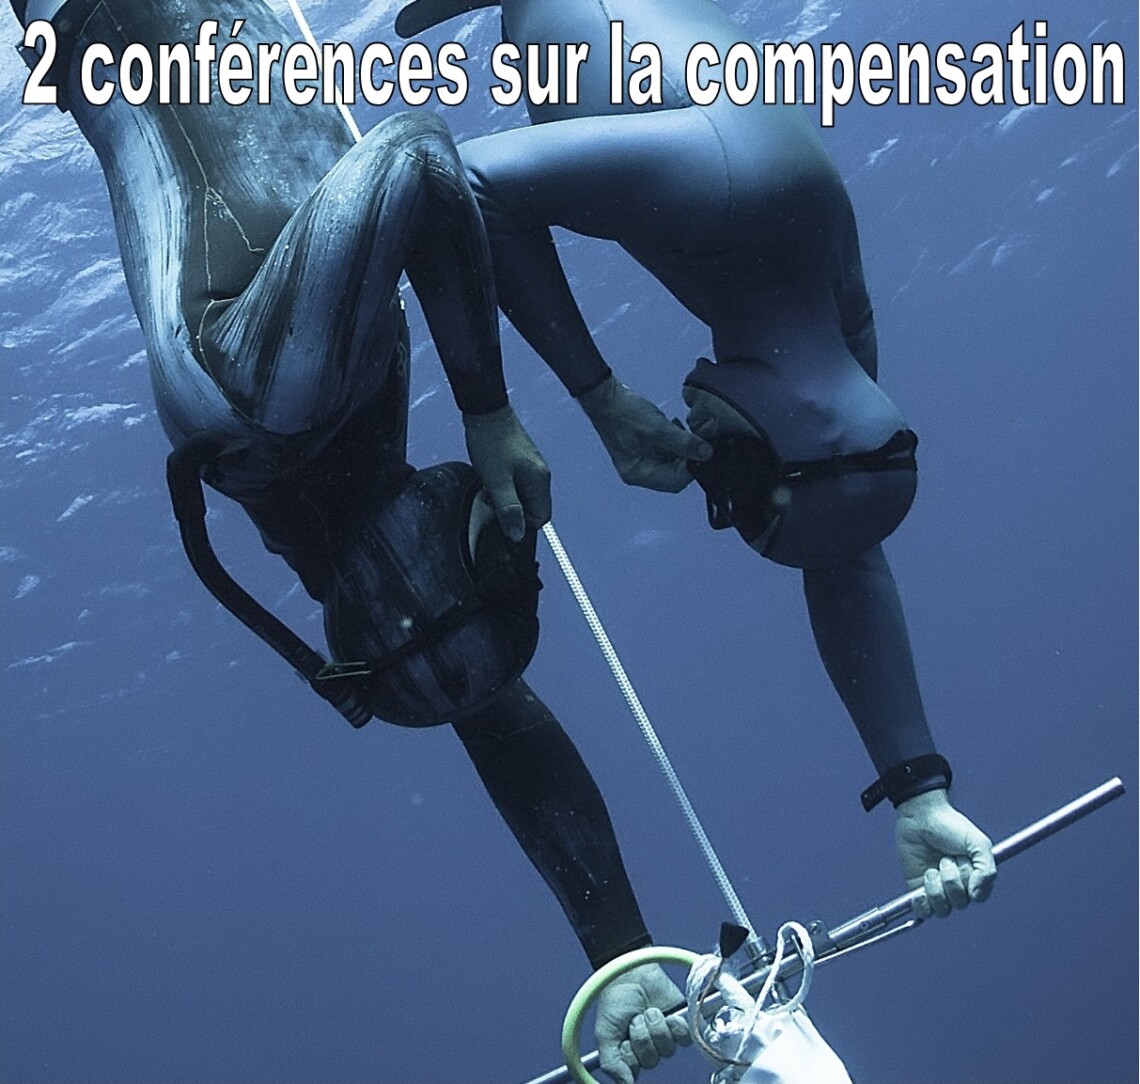 2 conferences compensation